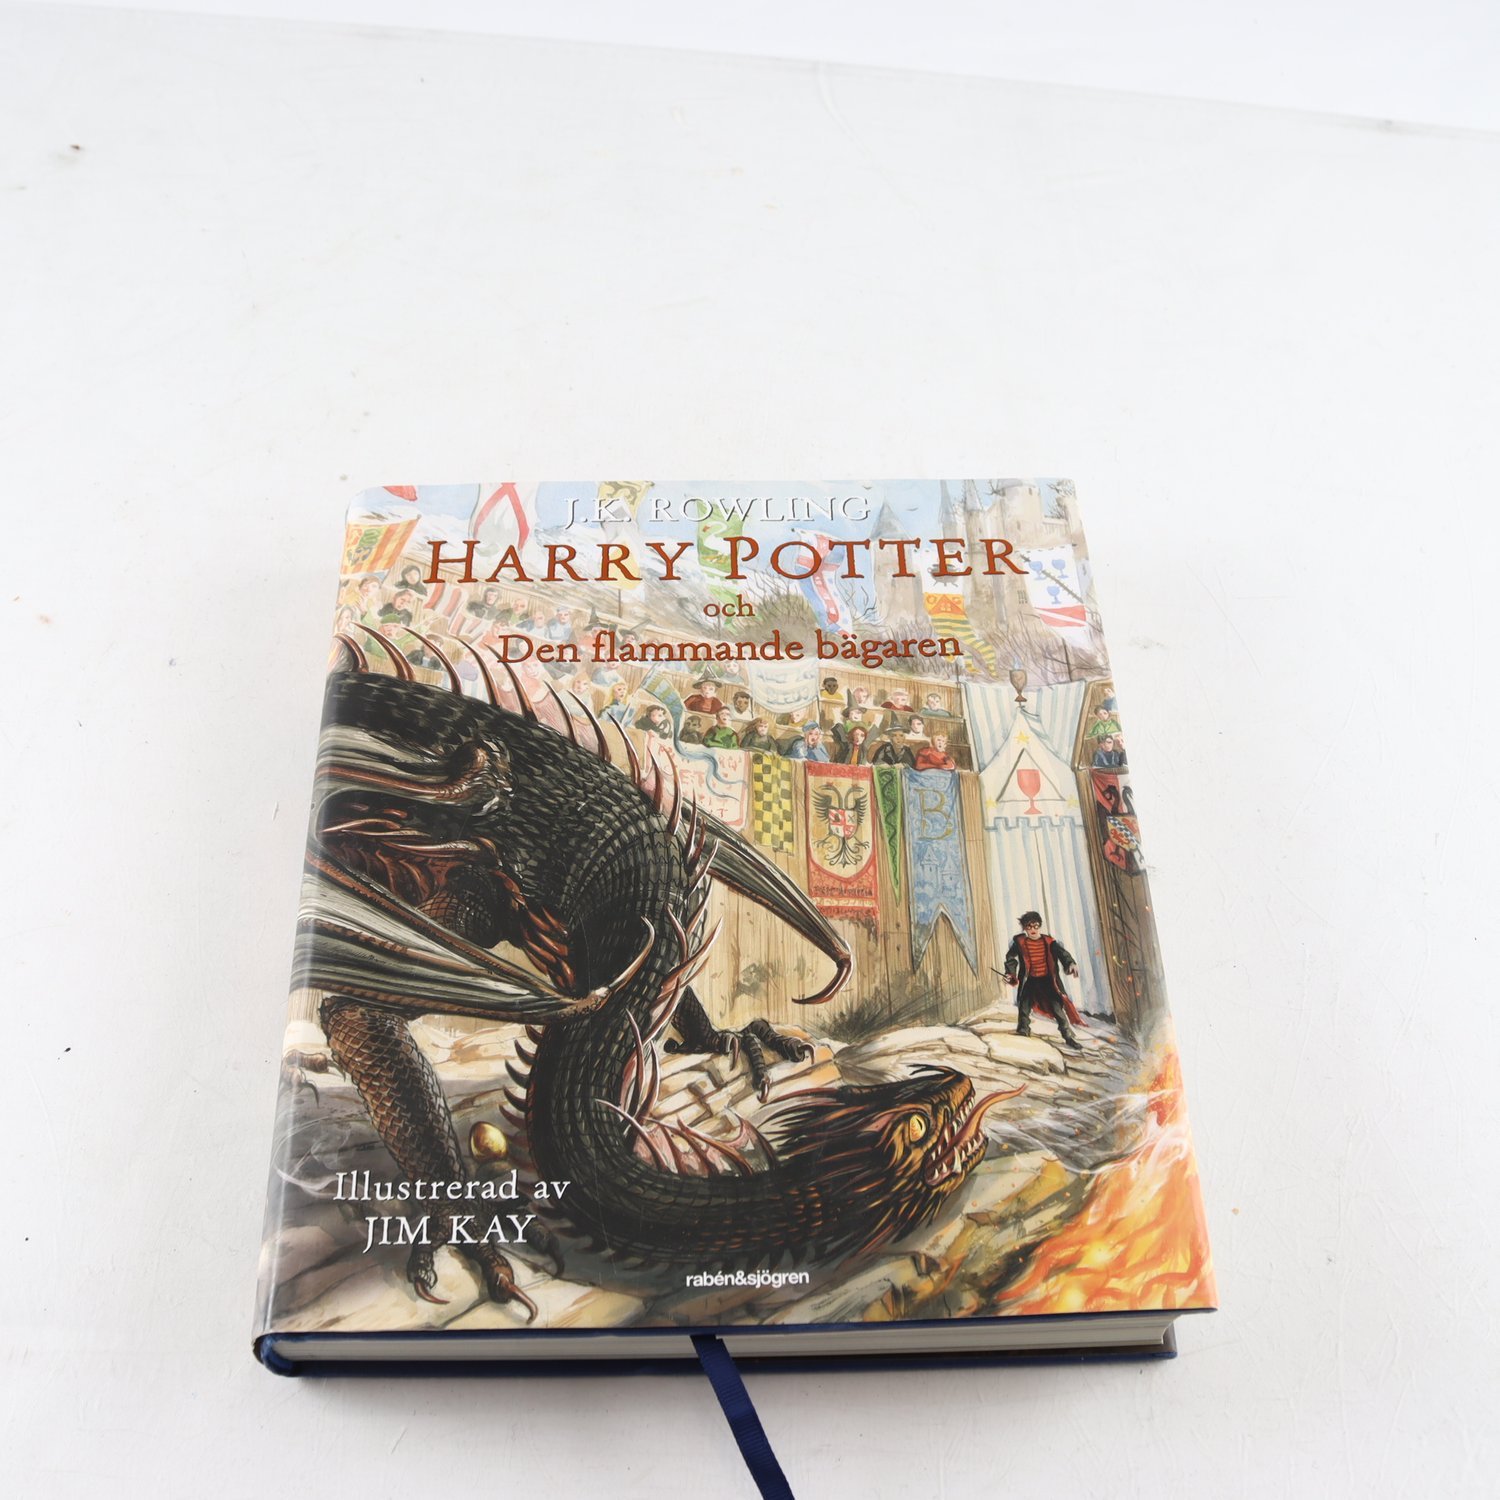 J.K. Rowling, Harry Potter och den flammande bägaren